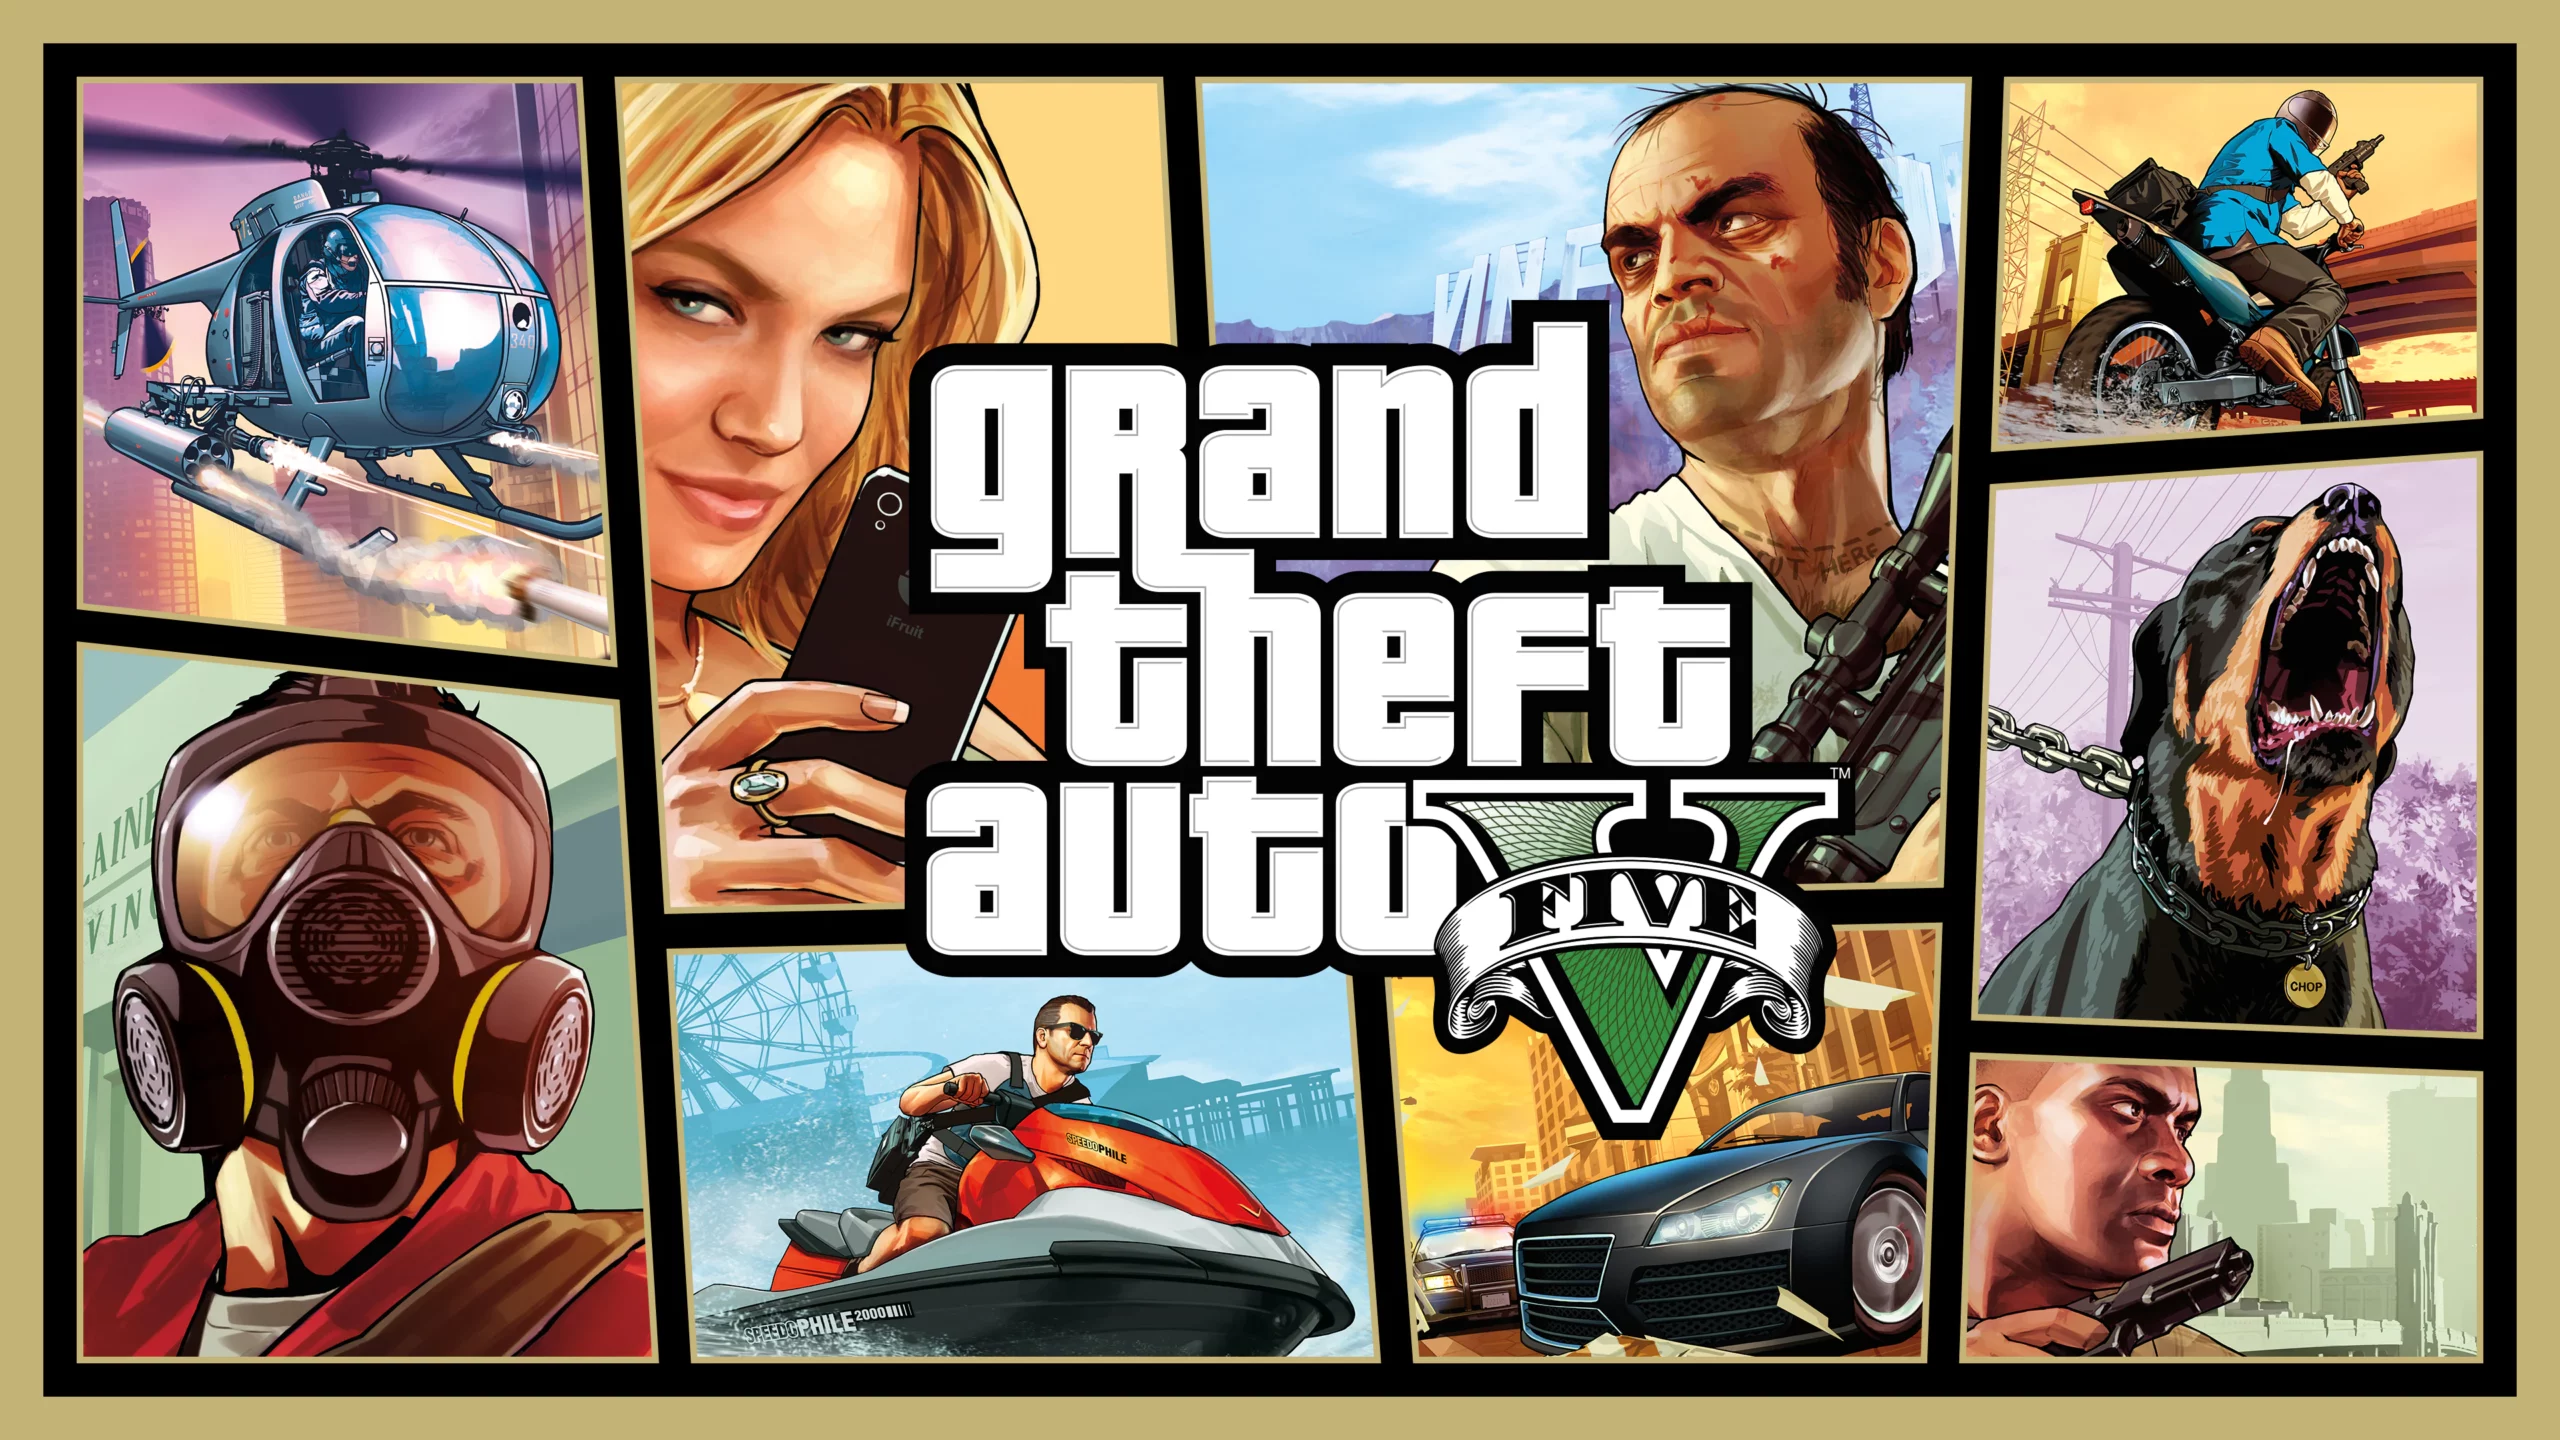 Grand Theft Auto V, jocul vândut în 190 milioane de exemplare 